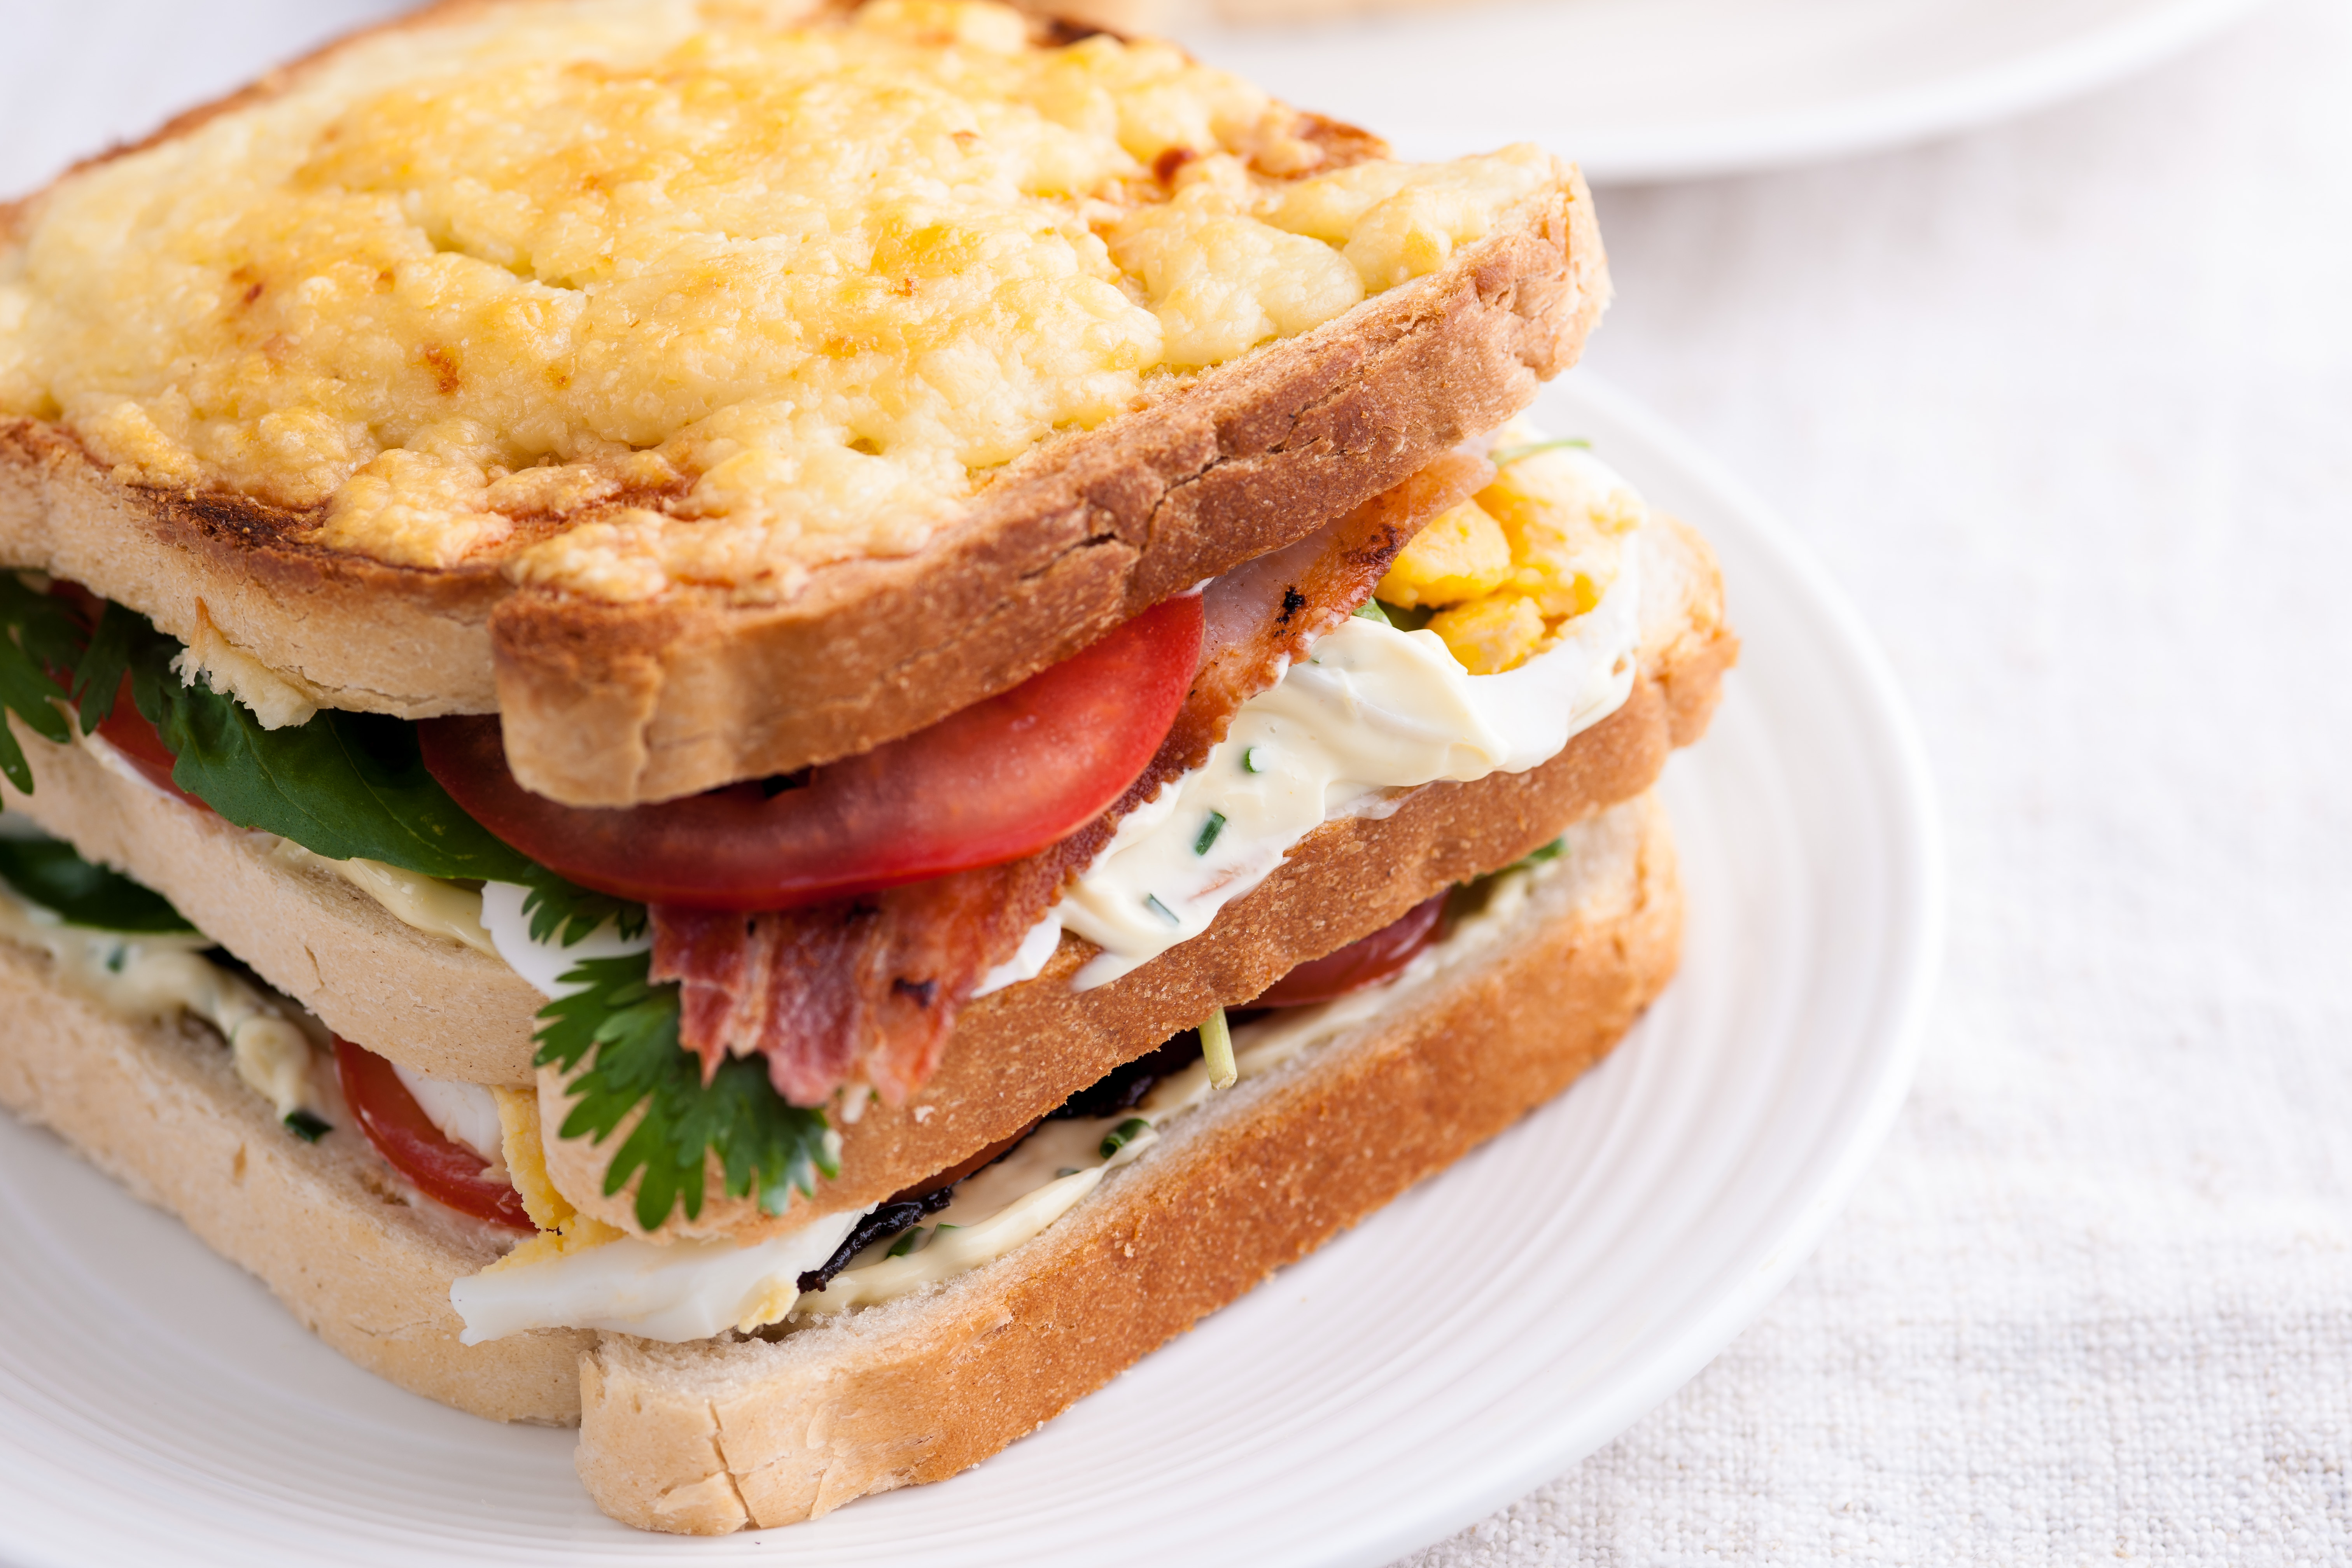 club sandwich recipe with egg